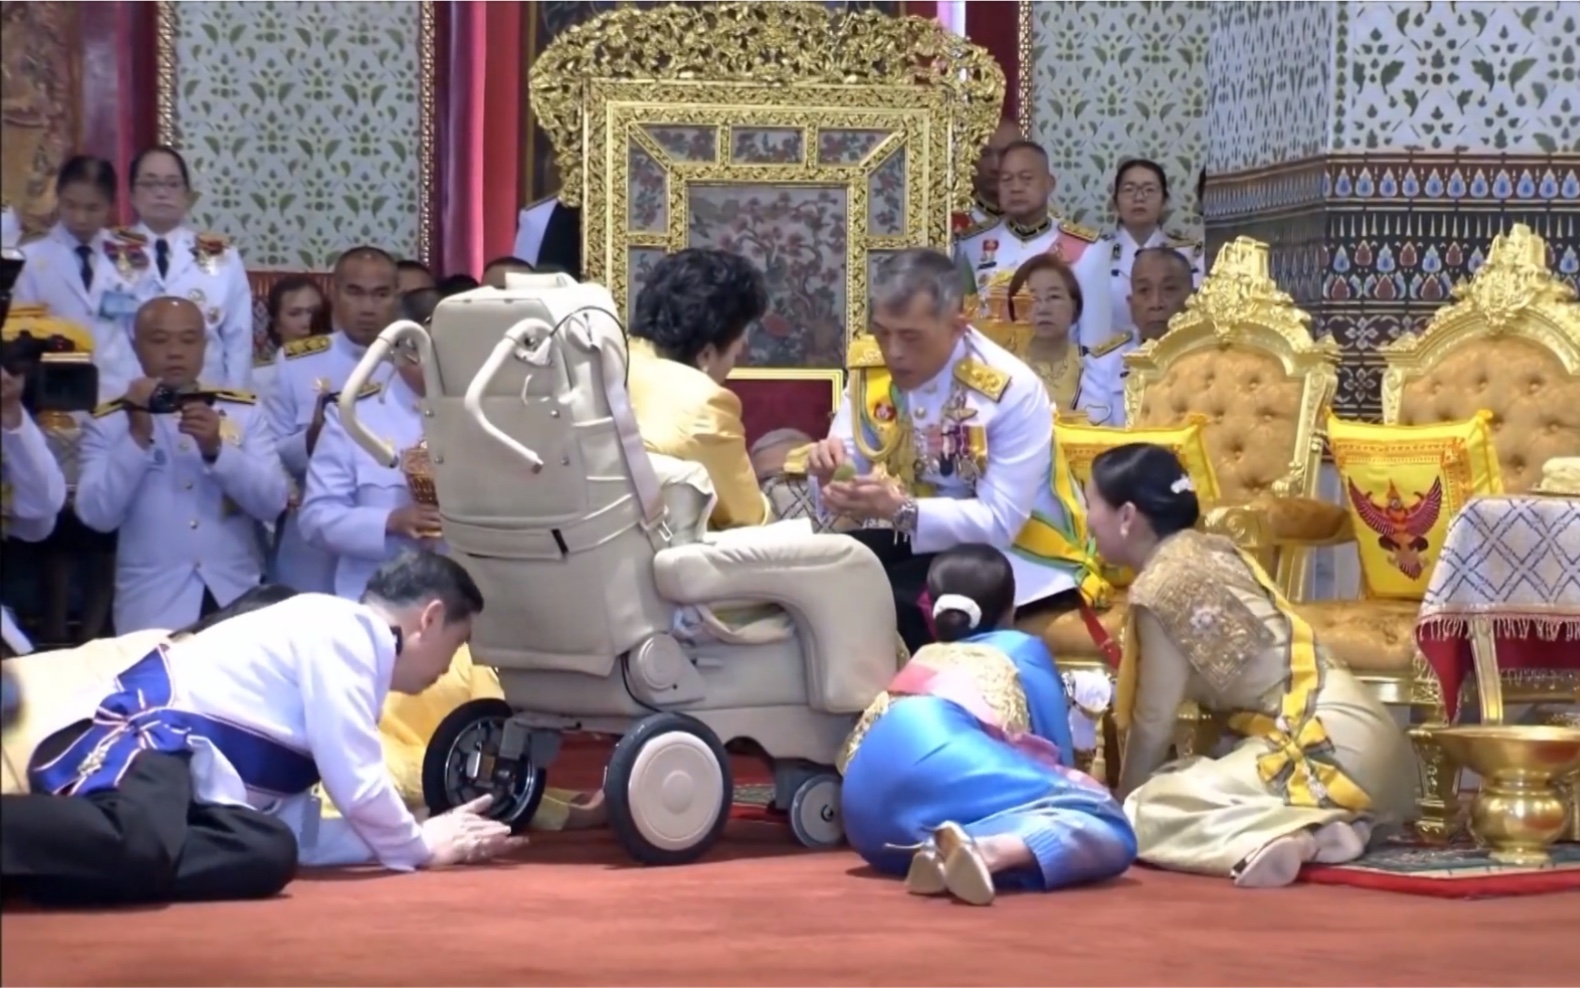 坐在轮椅上的原配妻子接受泰王接见，苏提达王后立即起身跪下行礼